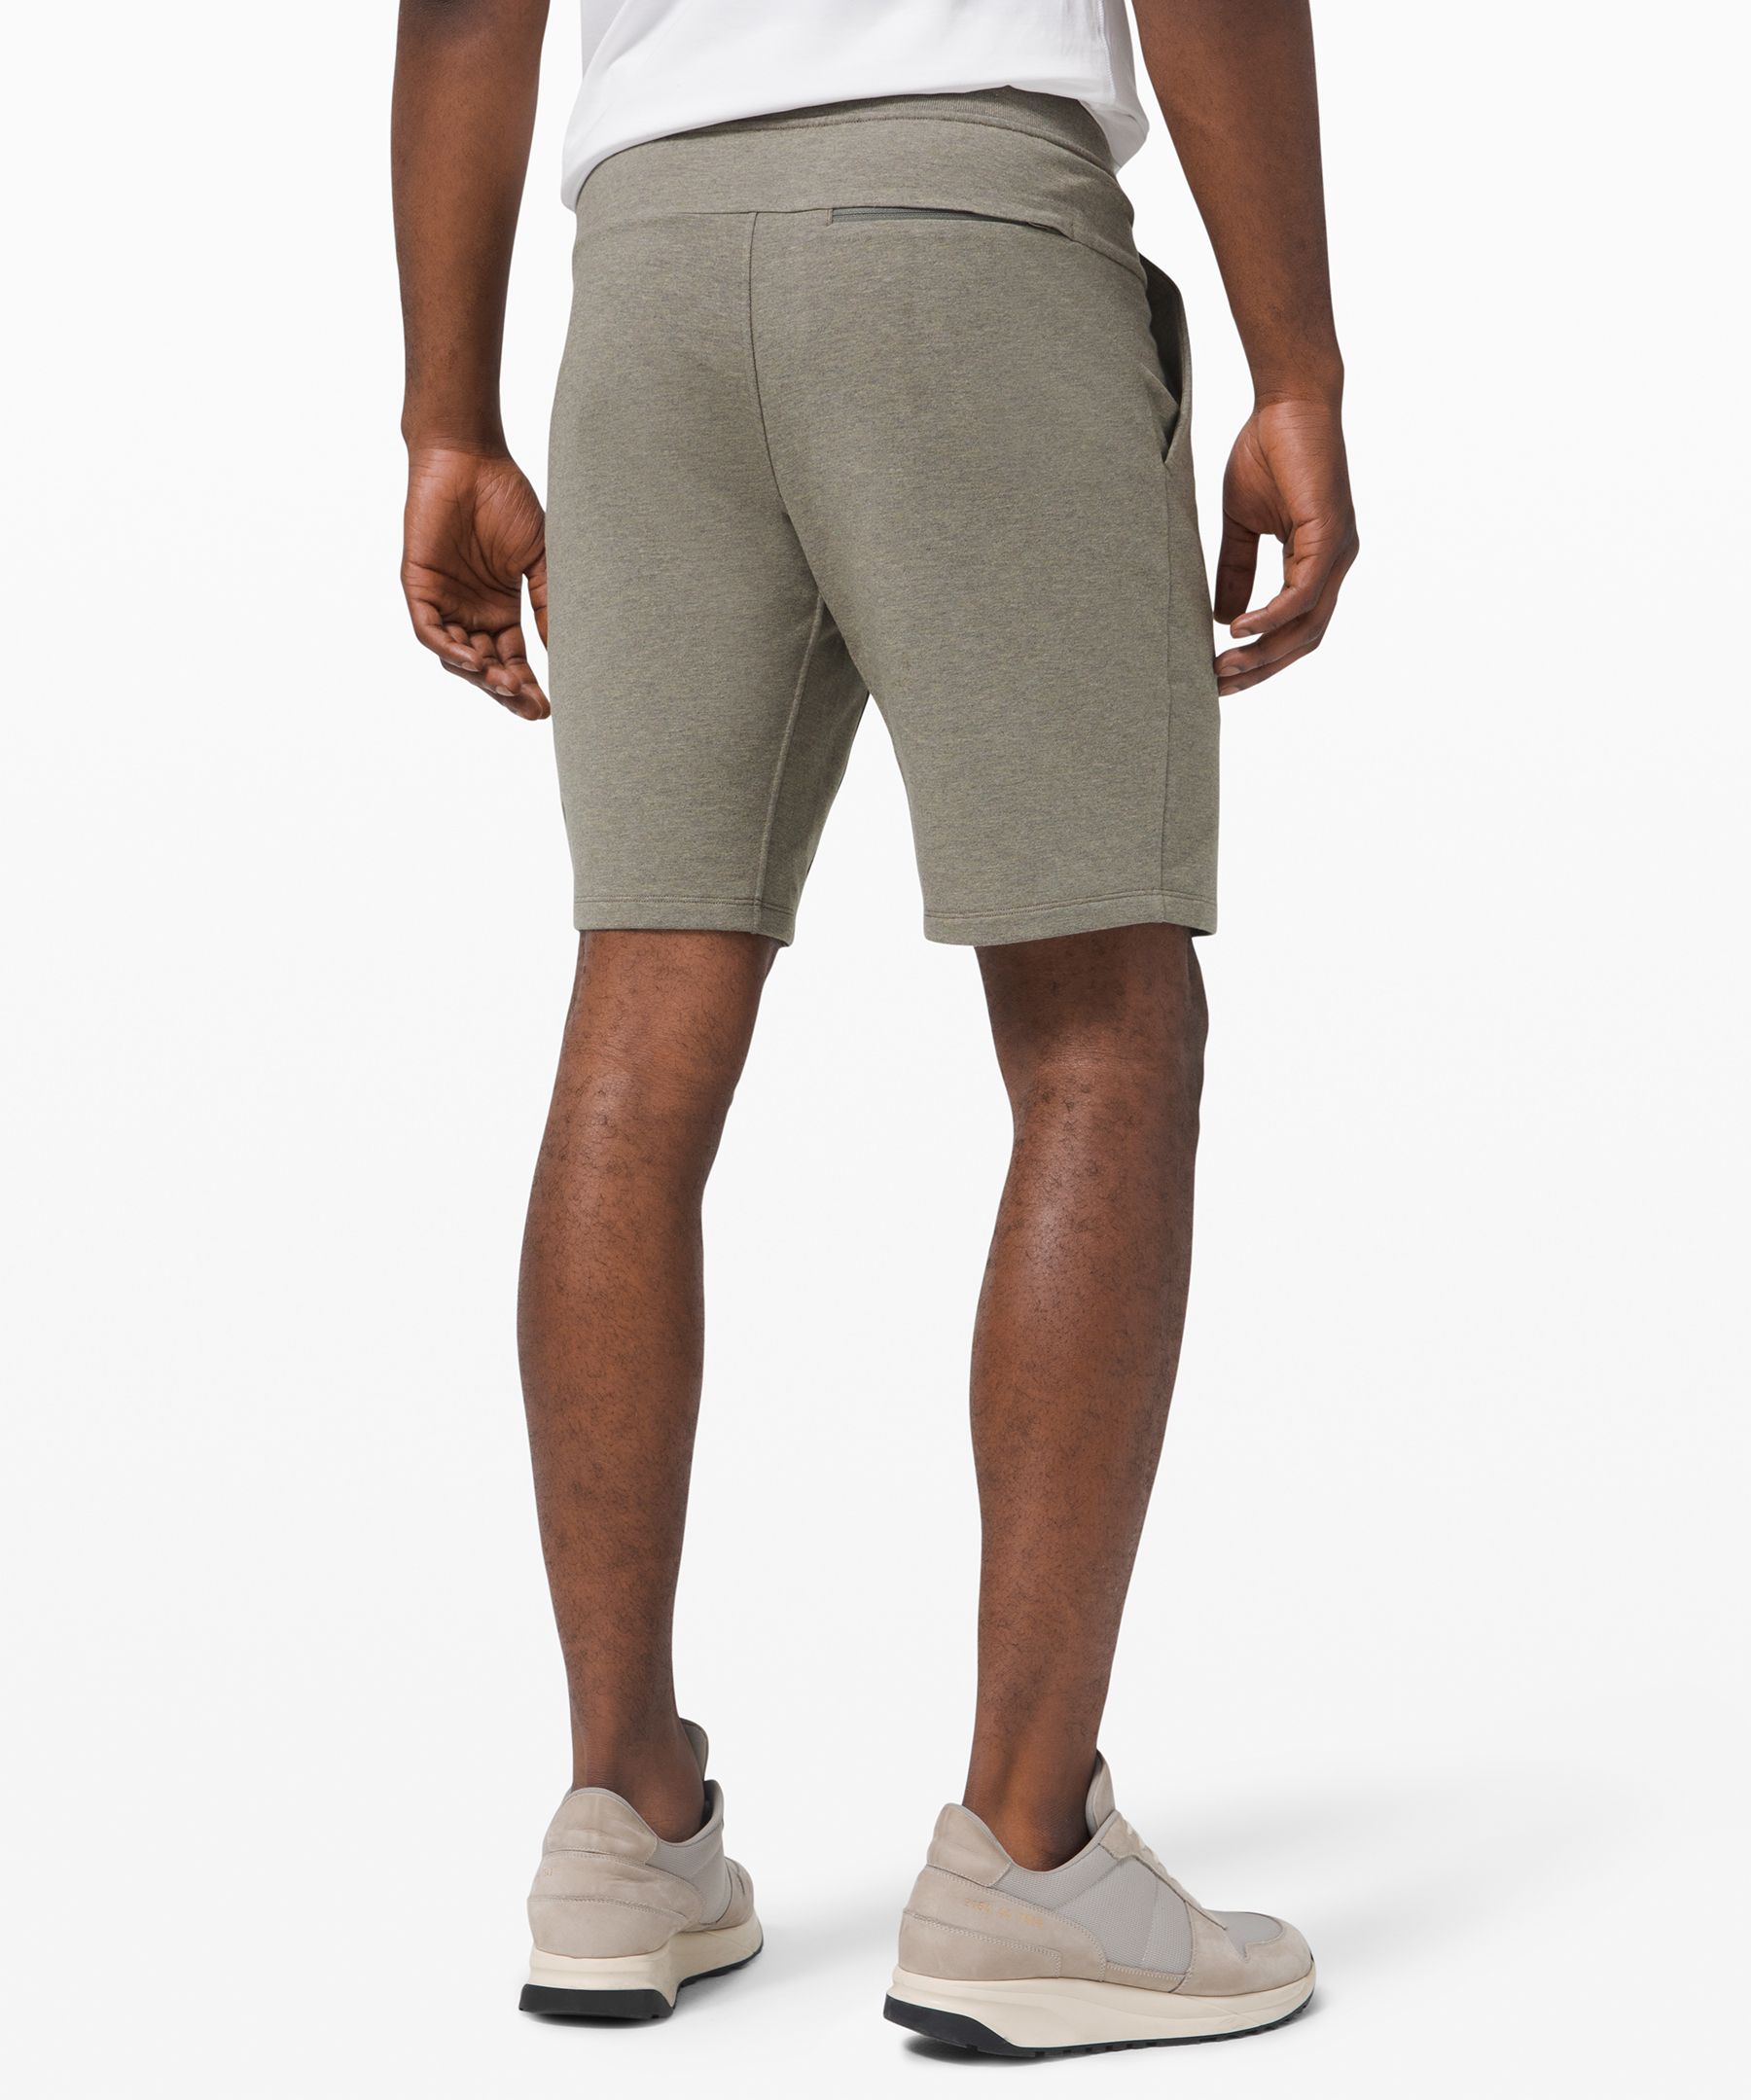 lululemon cotton shorts